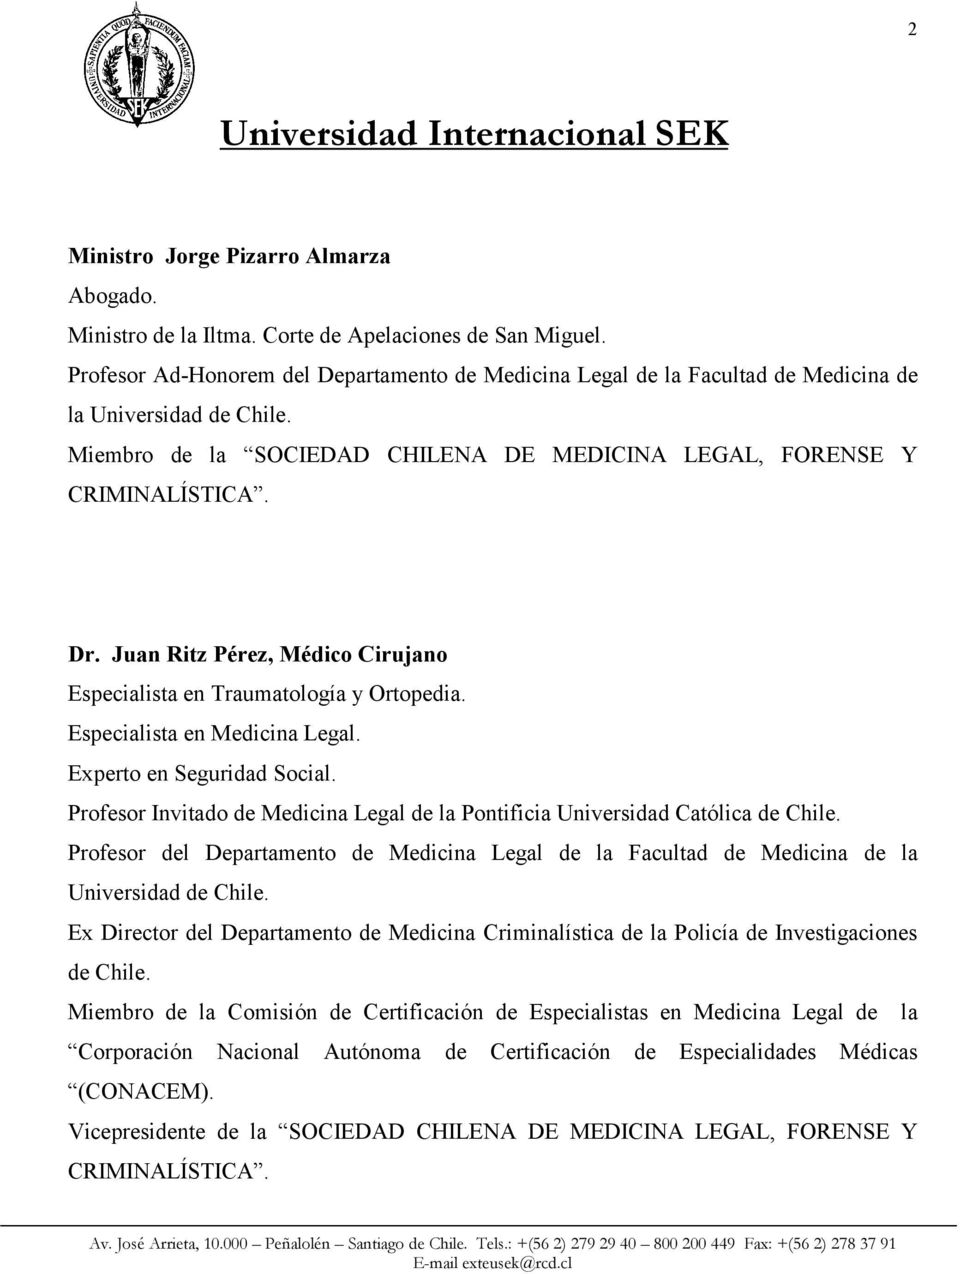 Juan Ritz Pérez, Médico Cirujano Especialista en Traumatología y Ortopedia. Especialista en Medicina Legal. Experto en Seguridad Social.